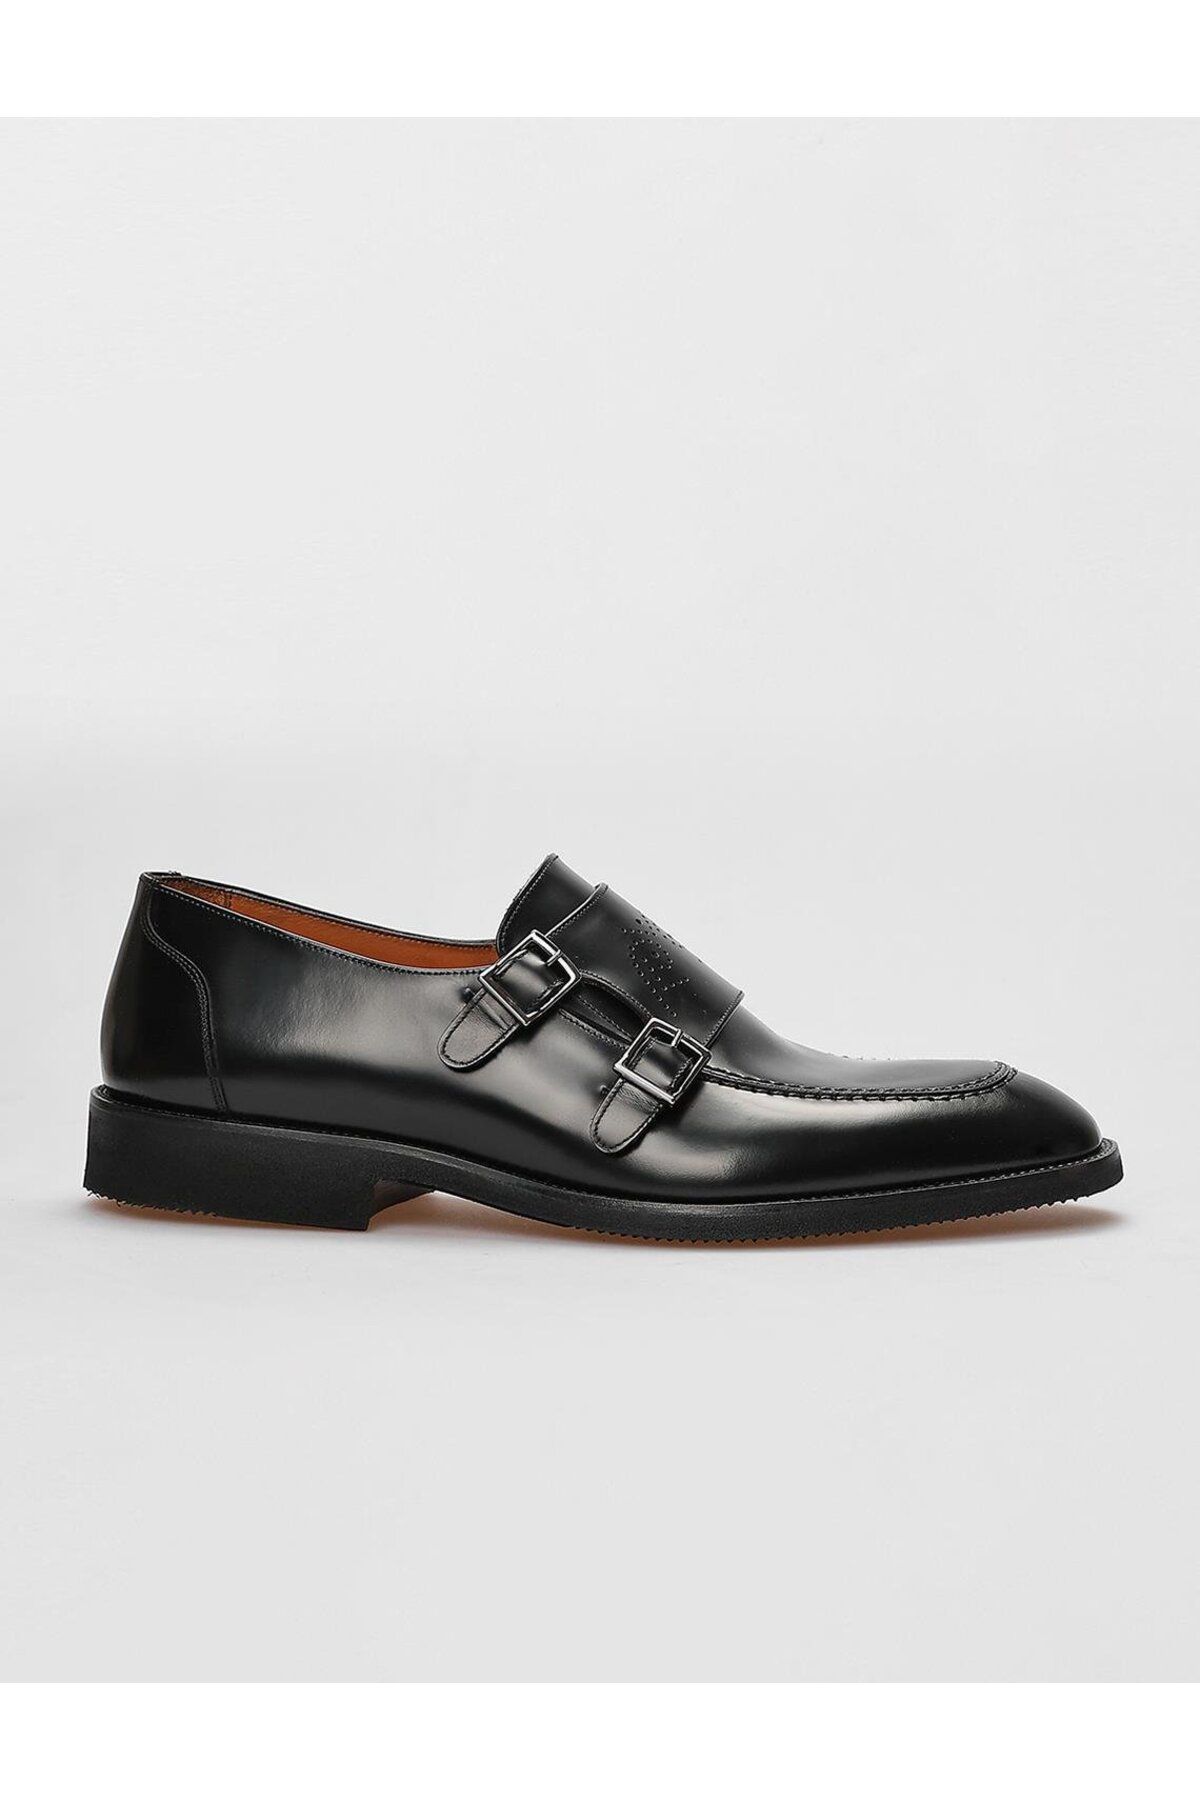 Cabani Hakiki Deri Siyah Açma Çift Tokalı Erkek Klasik Ayakkabı